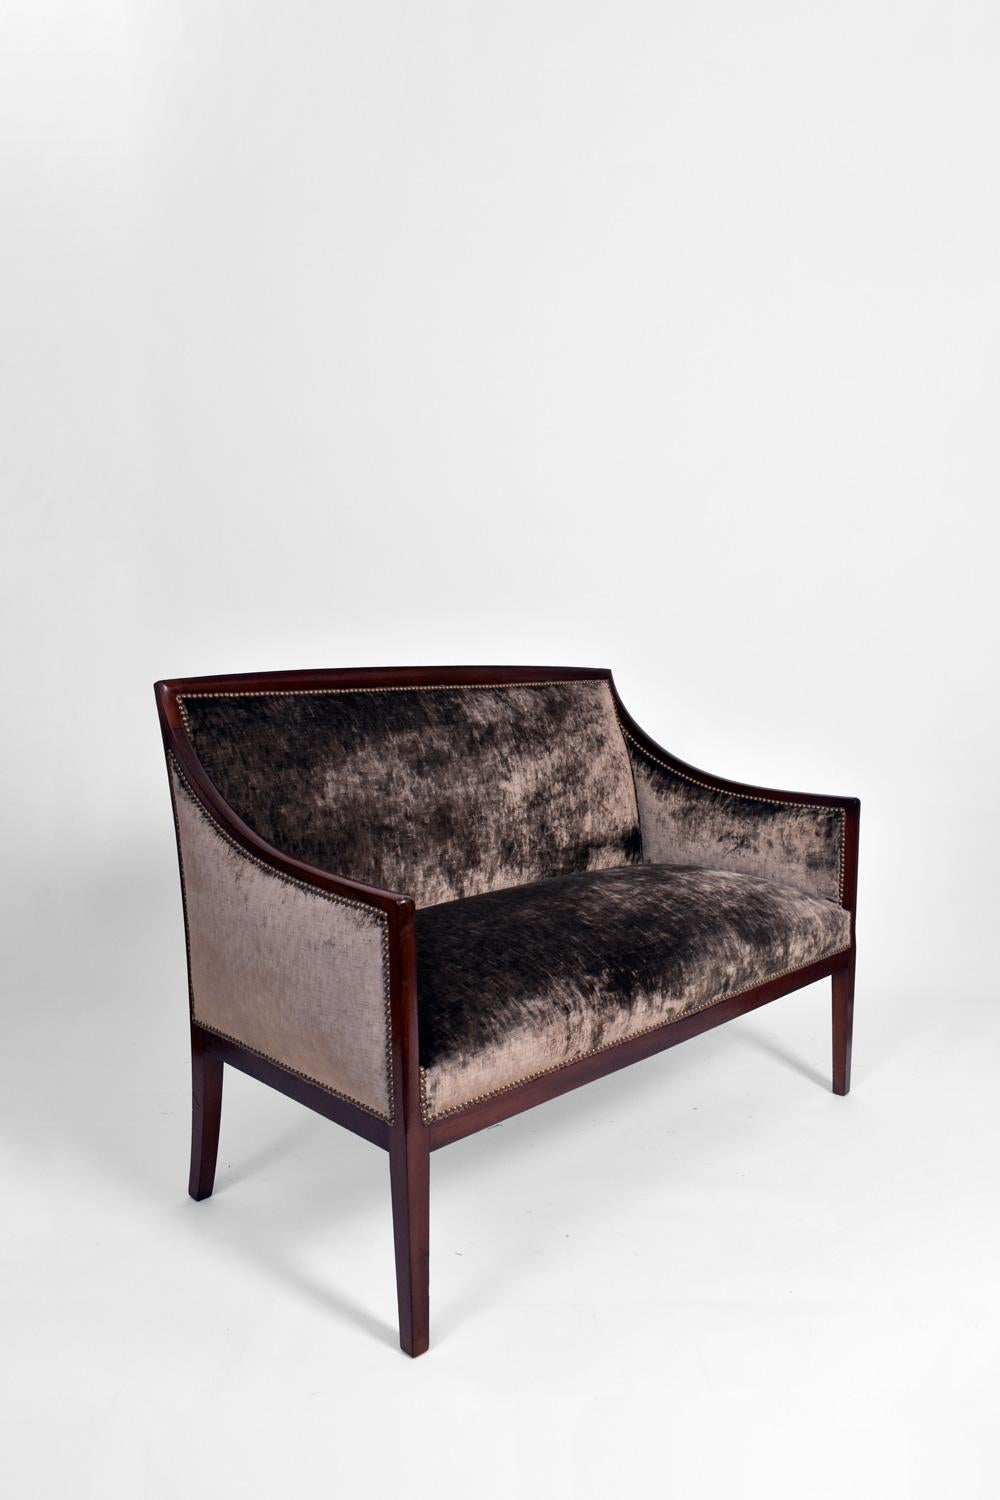 Zweisitziges Sofa aus Mahagoni, mit Baumwollsamt bezogen, im Stil von Jean-Michel Frank. Frankreich, 1940er Jahre.